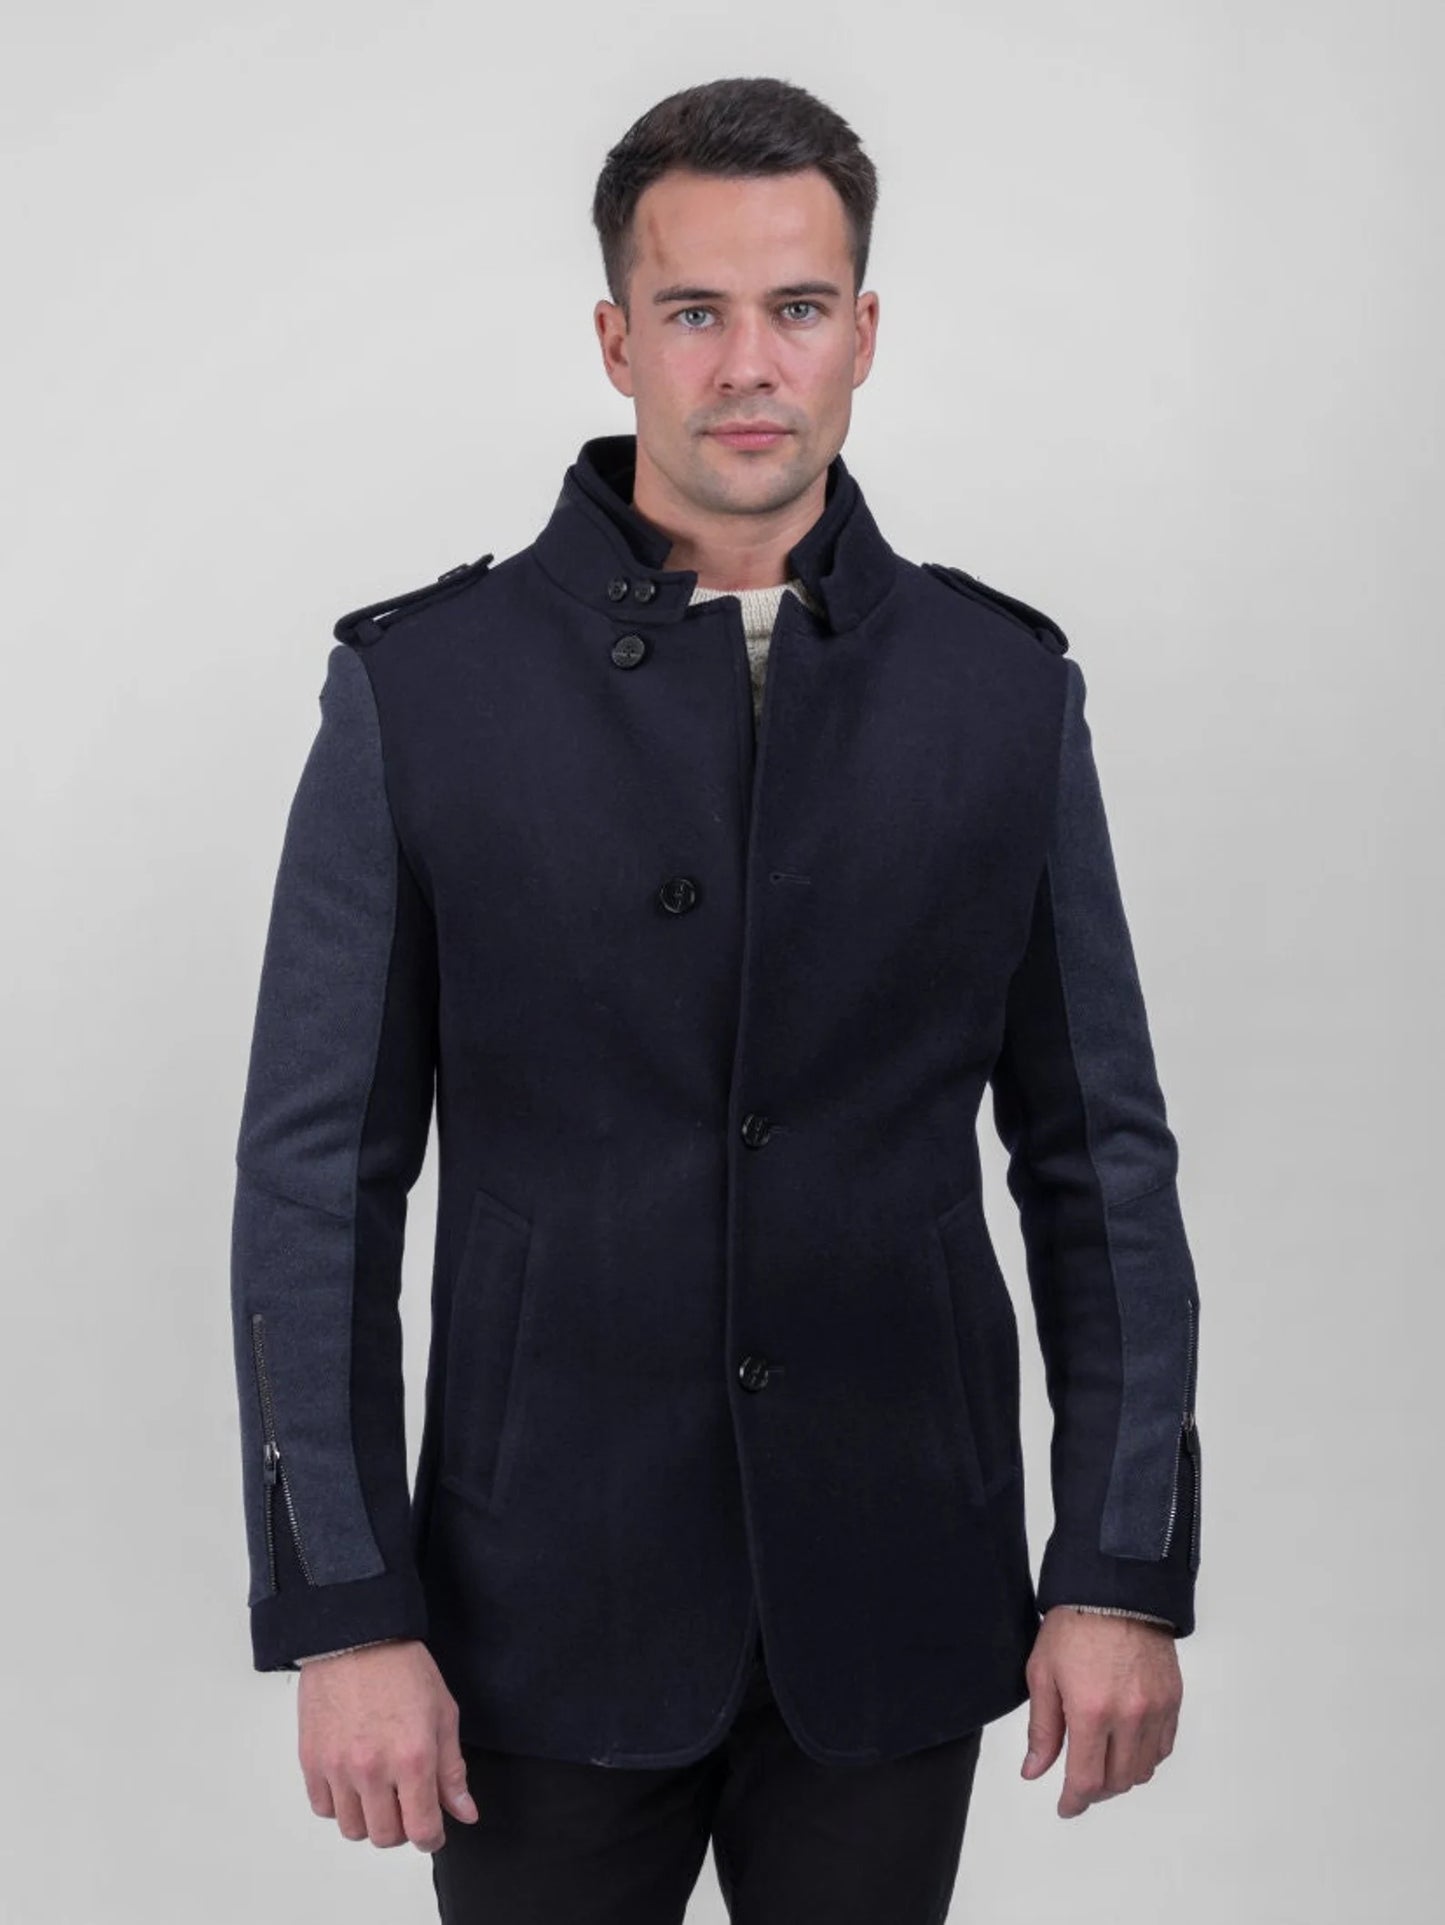 Men's Wool Jacket w/ Contrast Sleeves